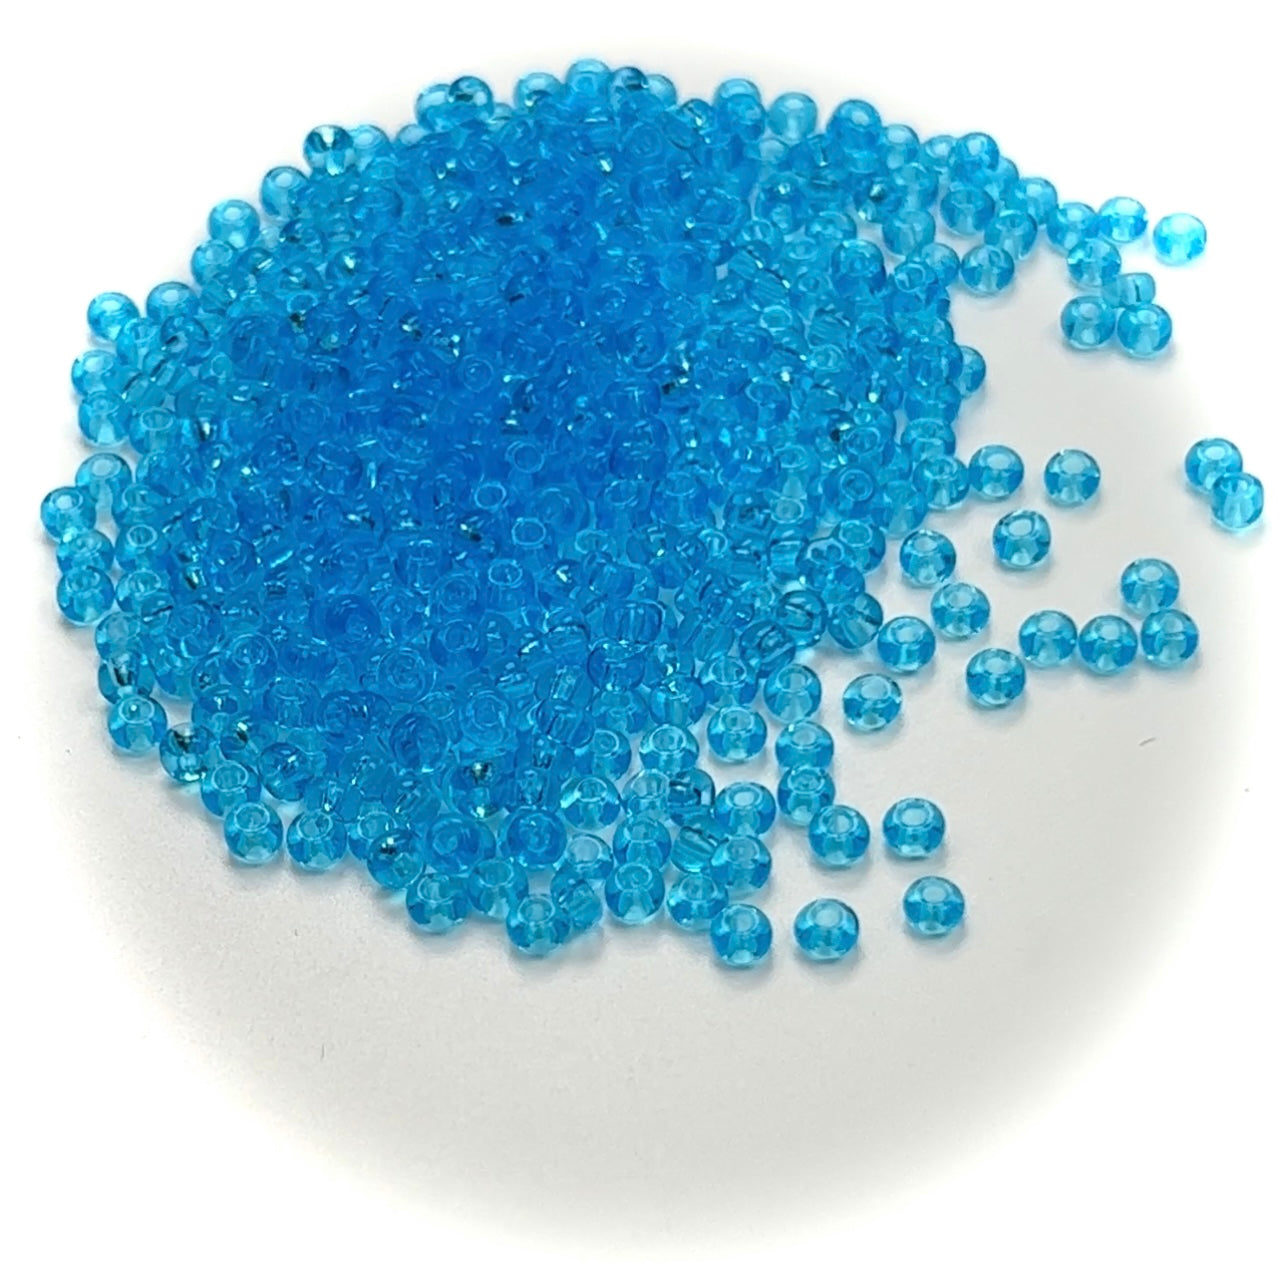 Rocailles size 7/0 (3.5mm) Aquamarine blue transparent, Preciosa Ornela Traditional Czech Glass Seed Beads, 30grams (1 oz), P974